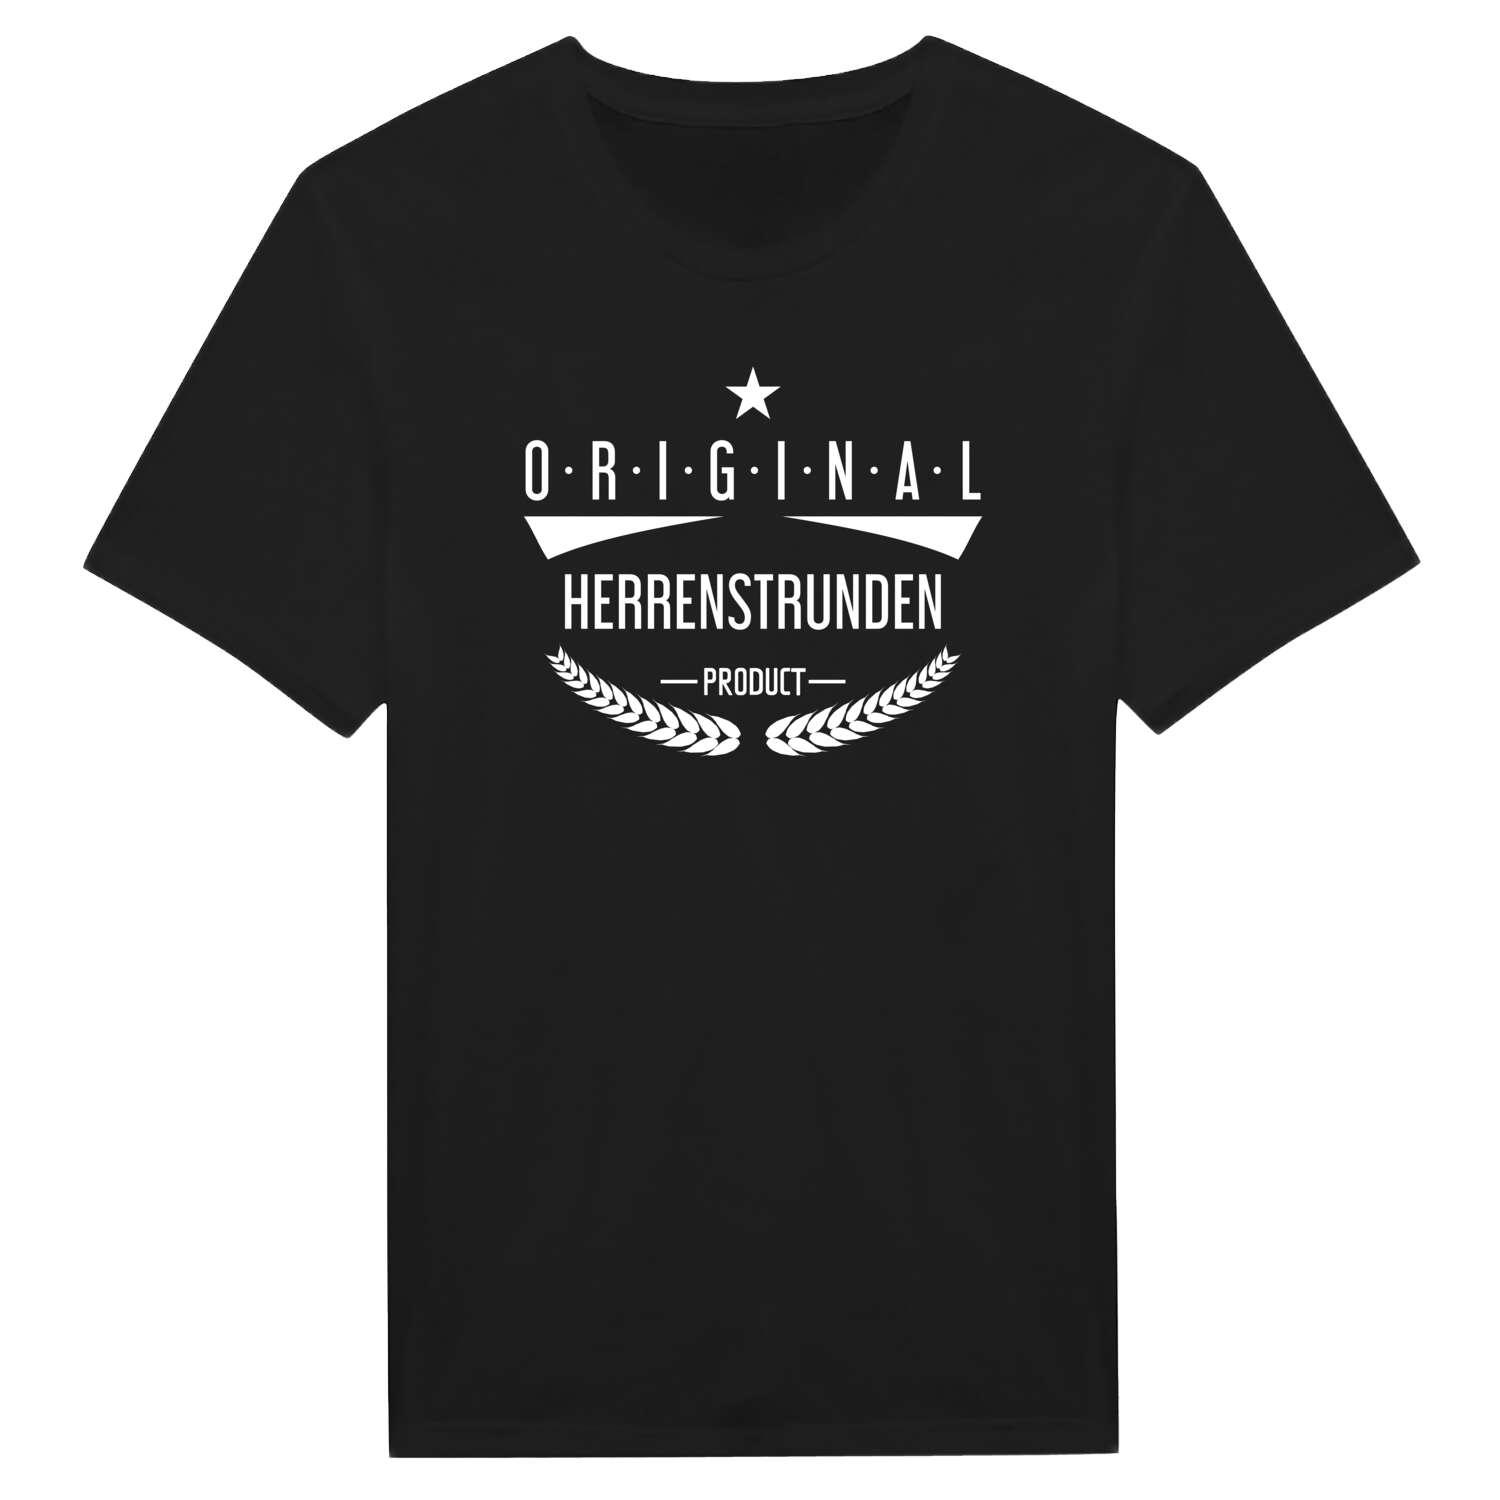 Herrenstrunden T-Shirt »Original Product«